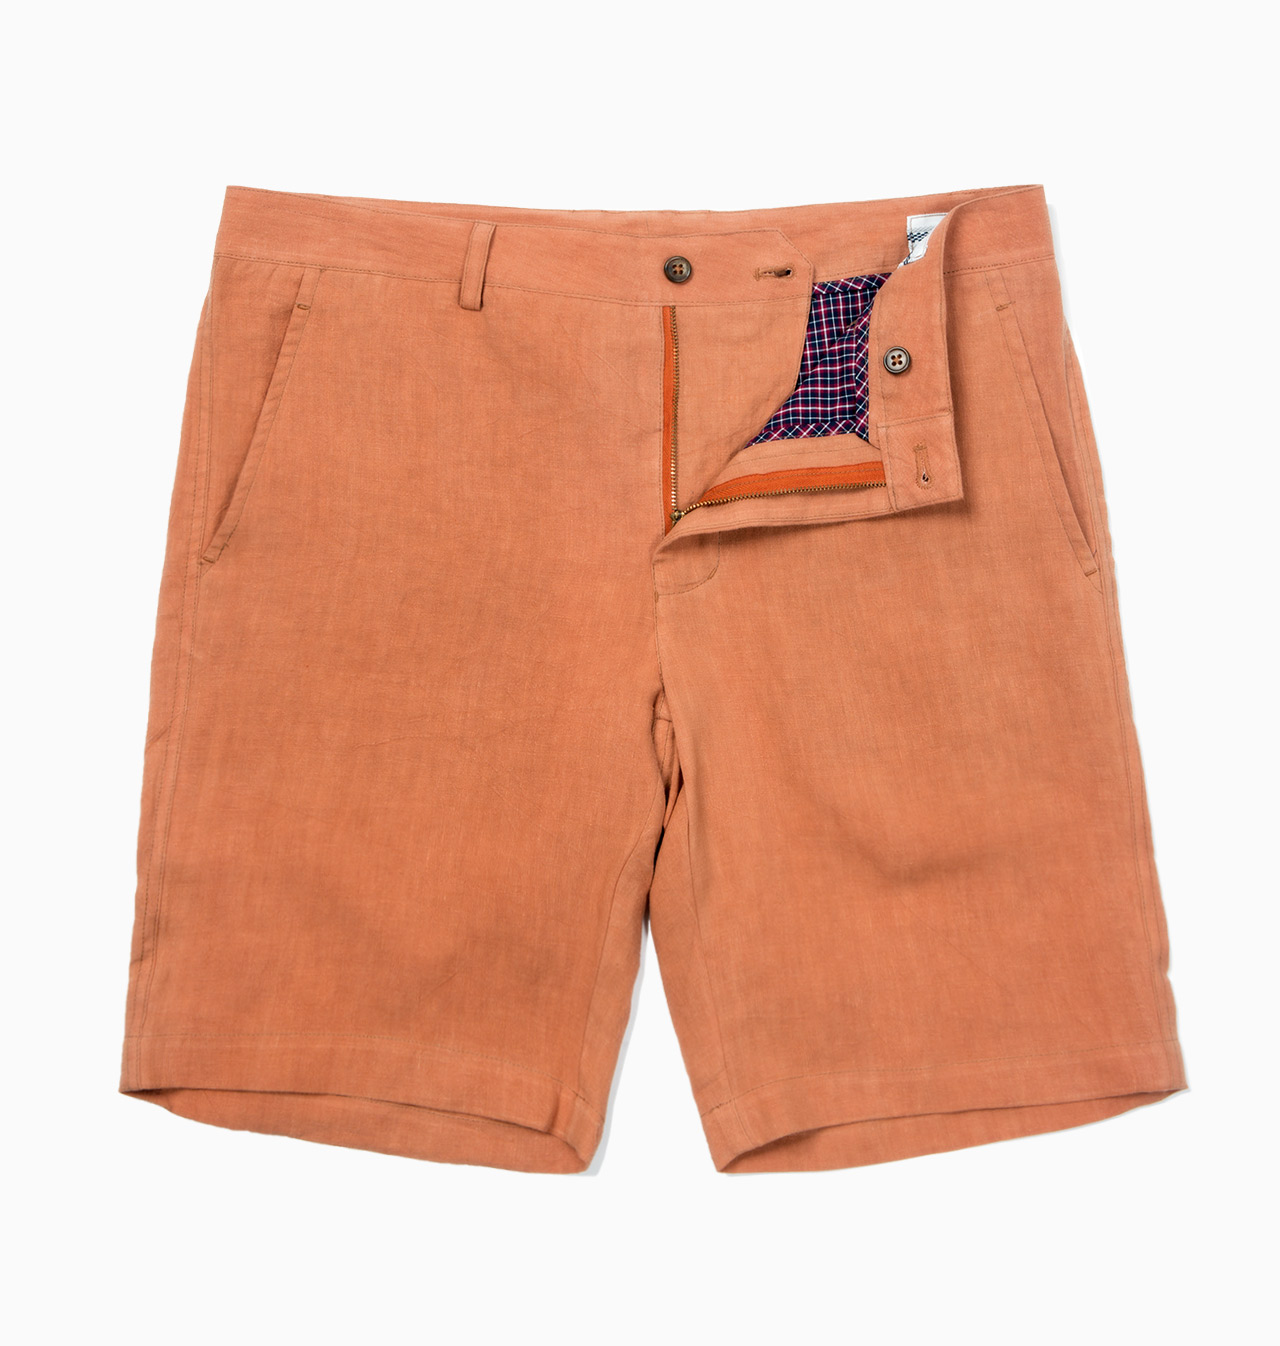 Russet Brown Linen / S1462 - Shorts